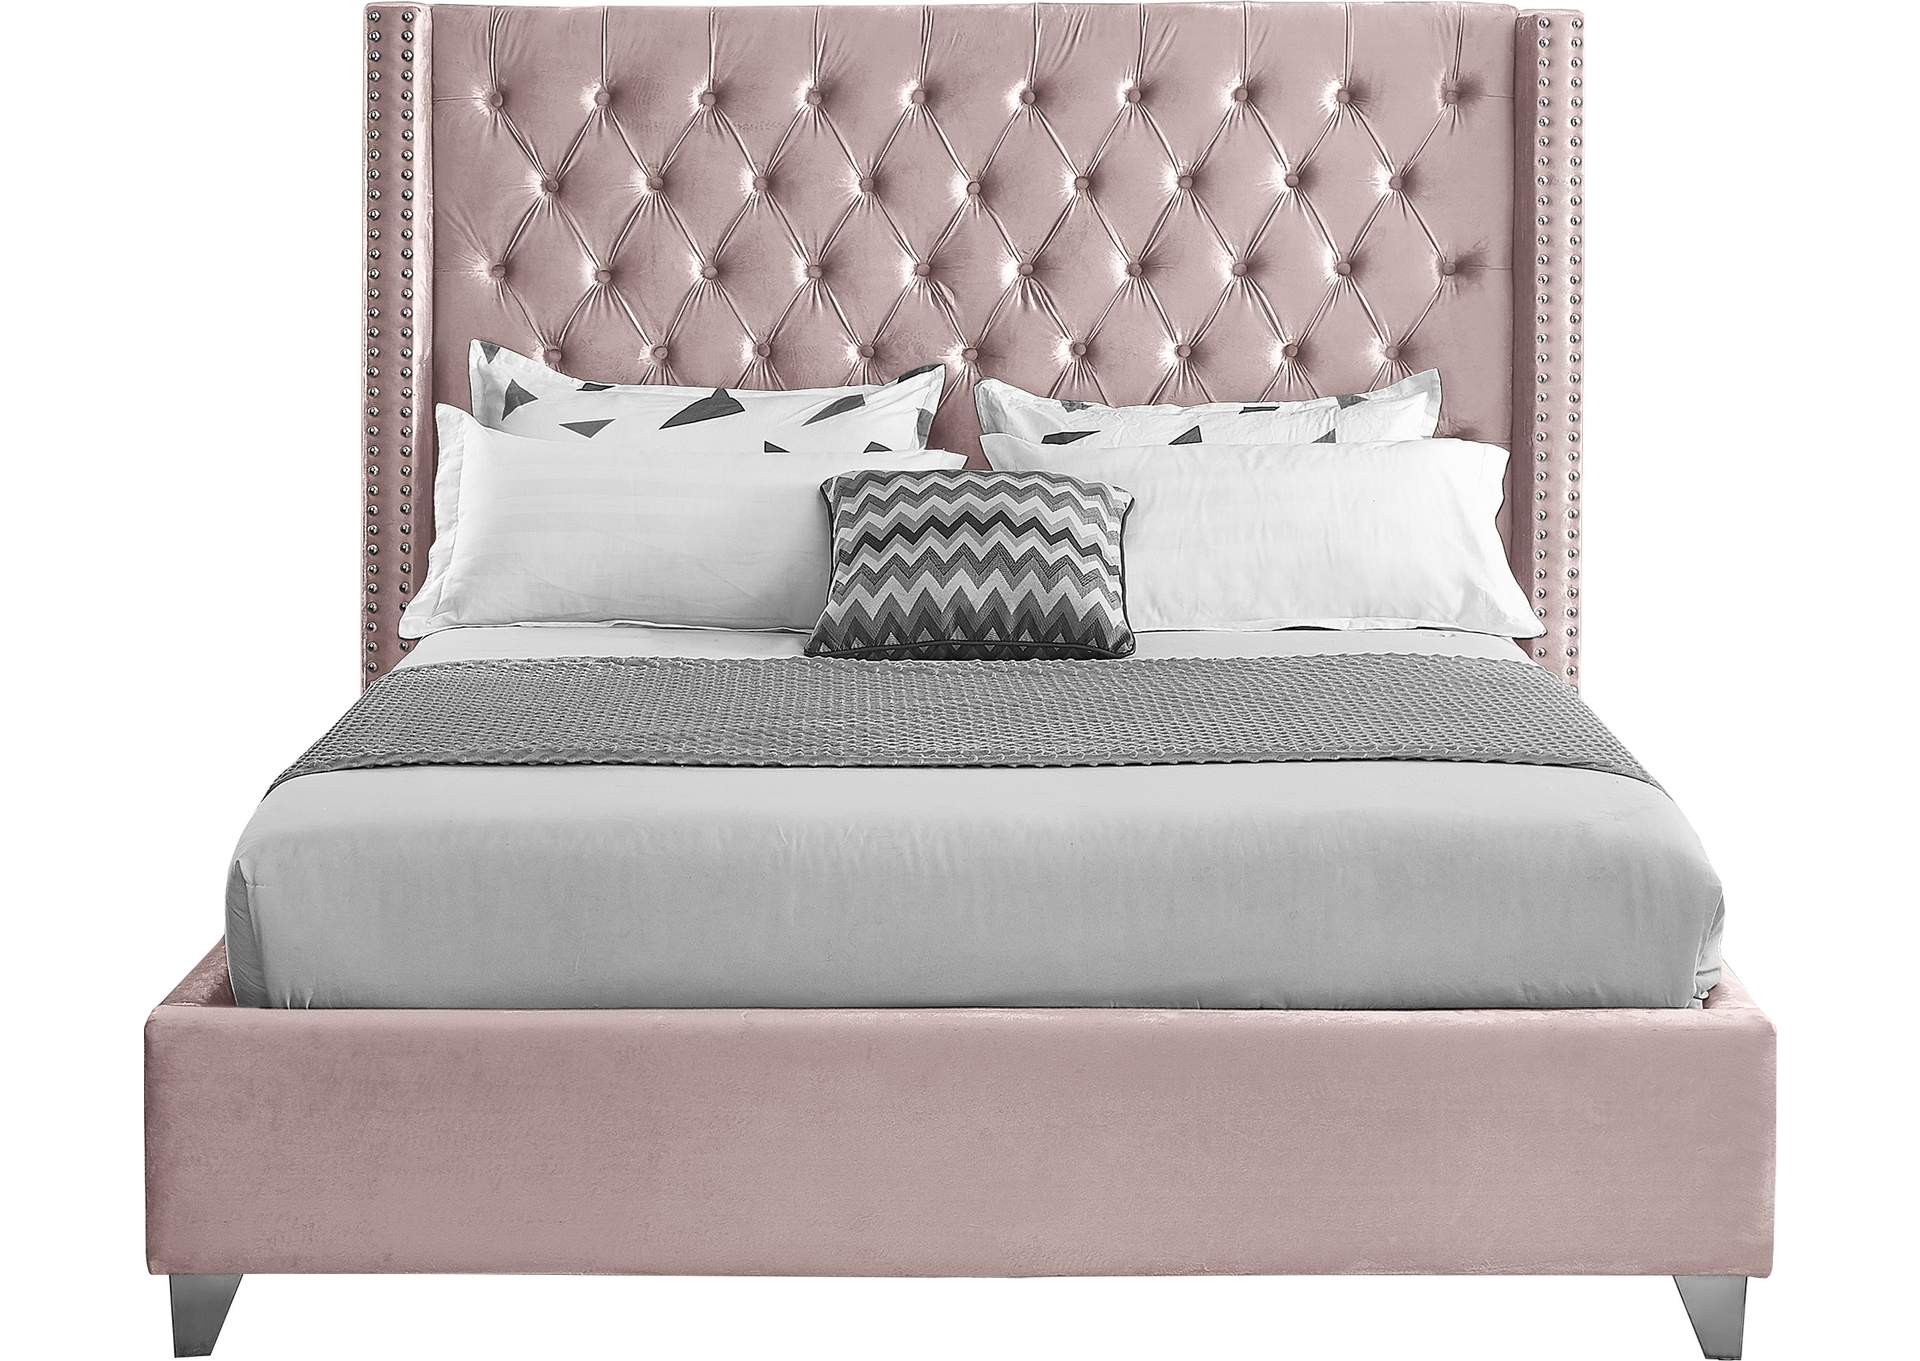 Aiden Pink Velvet Full Bed Amazing, Aiden Gray Velvet Bed King